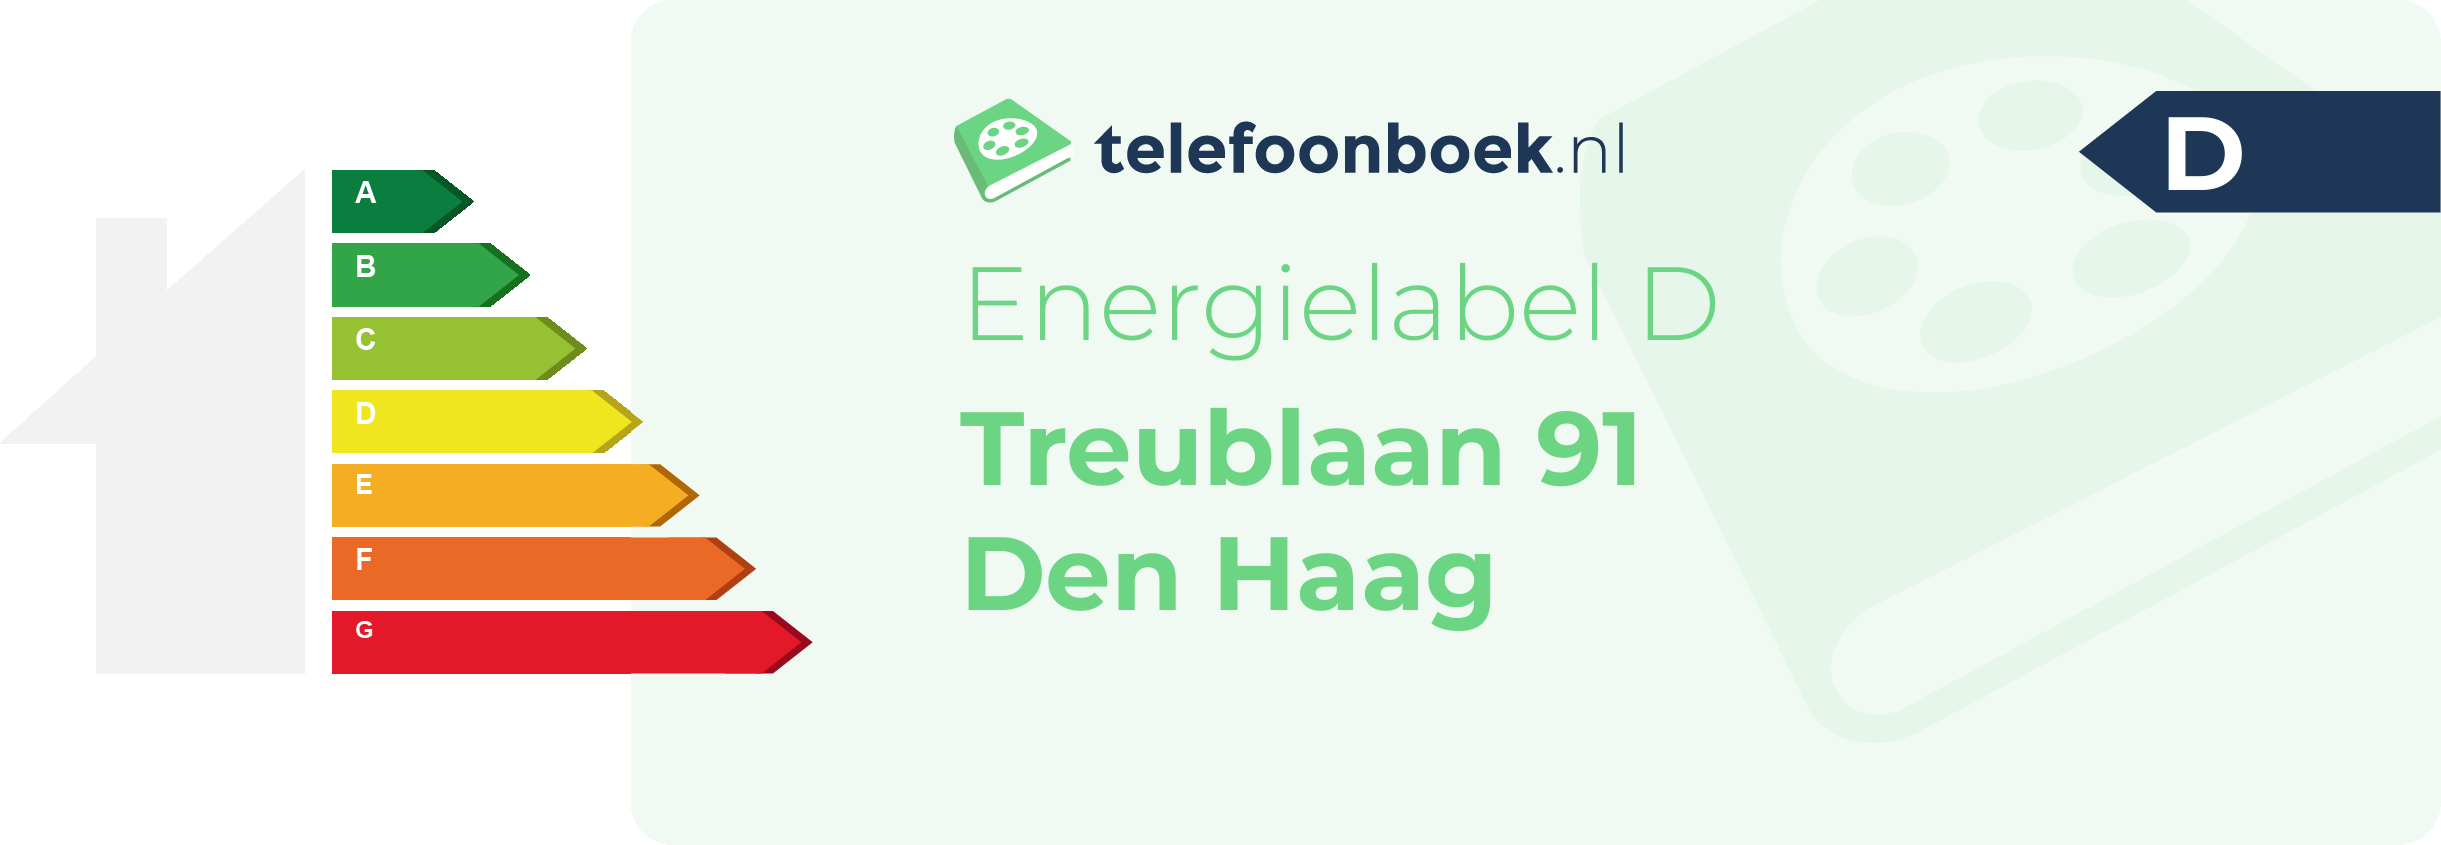 Energielabel Treublaan 91 Den Haag